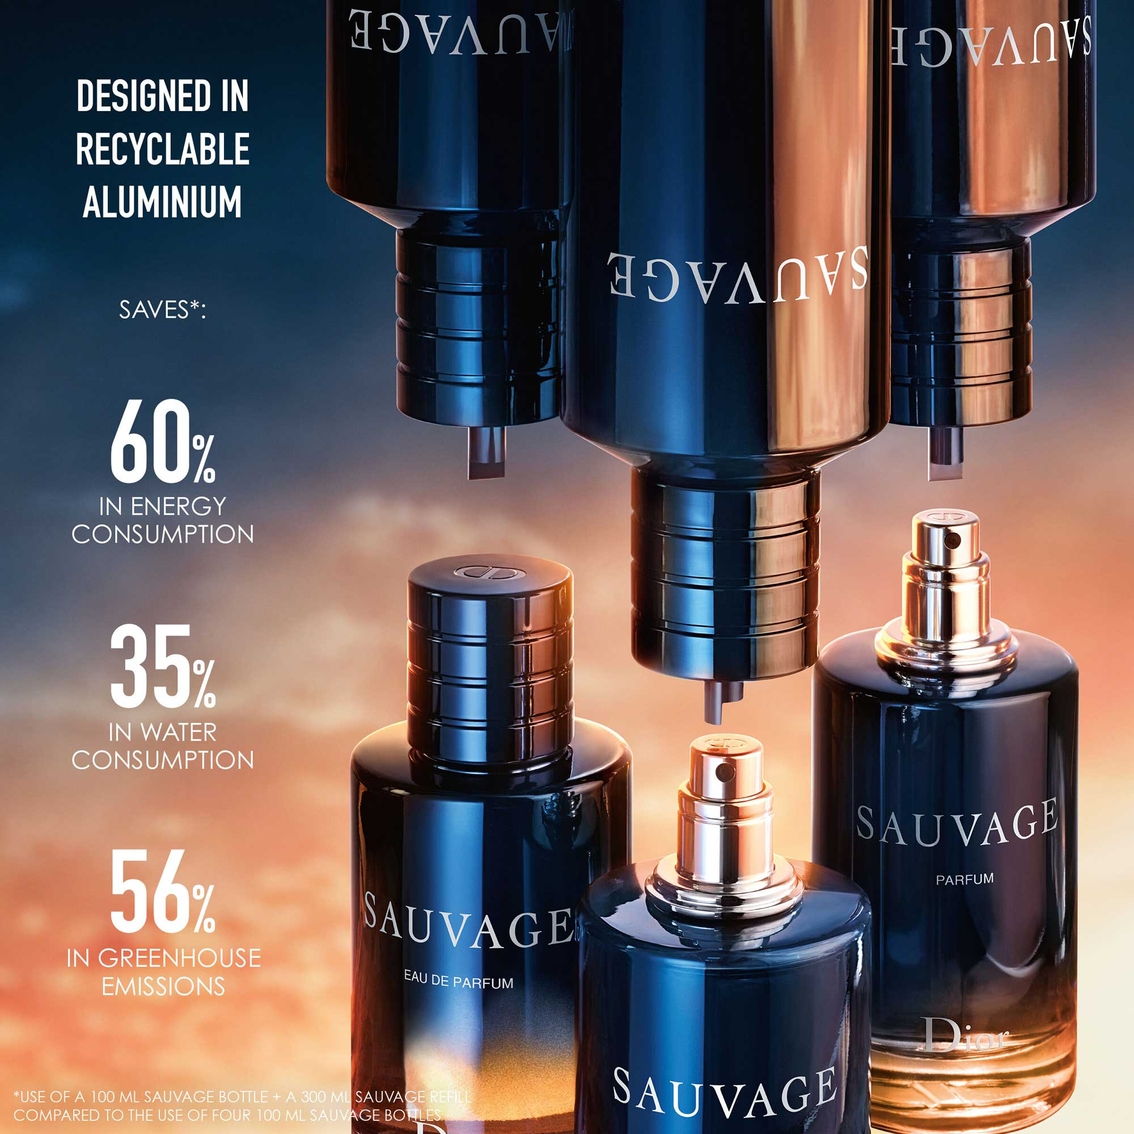 Dior Sauvage Parfum - Image 3 of 4